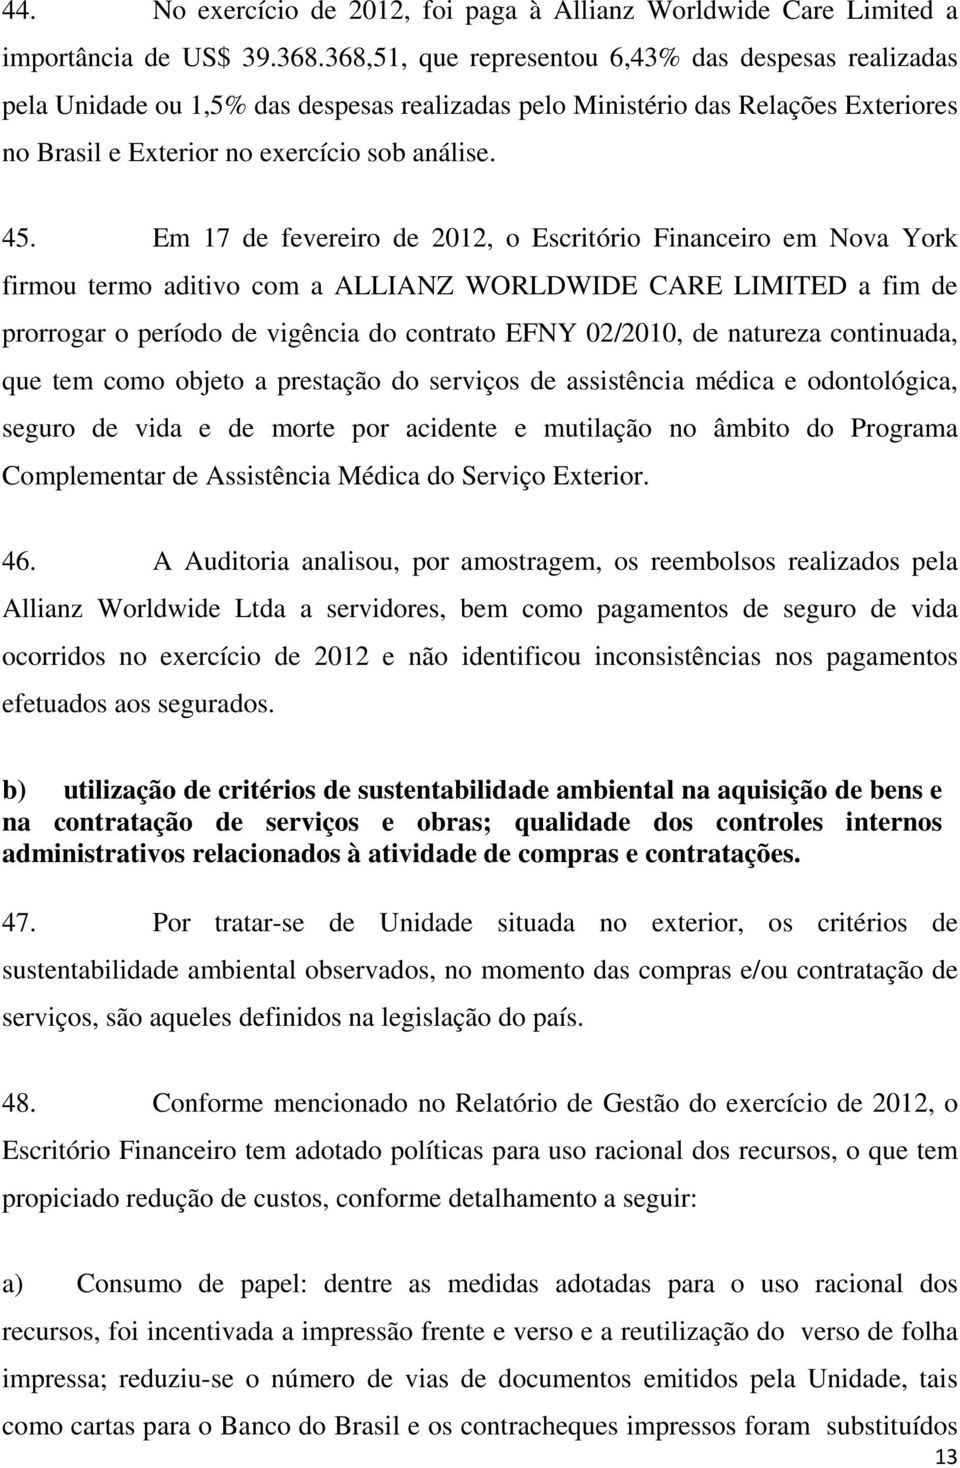 Em 17 de fevereiro de 2012, o Escritório Financeiro em Nova York firmou termo aditivo com a ALLIANZ WORLDWIDE CARE LIMITED a fim de prorrogar o período de vigência do contrato EFNY 02/2010, de